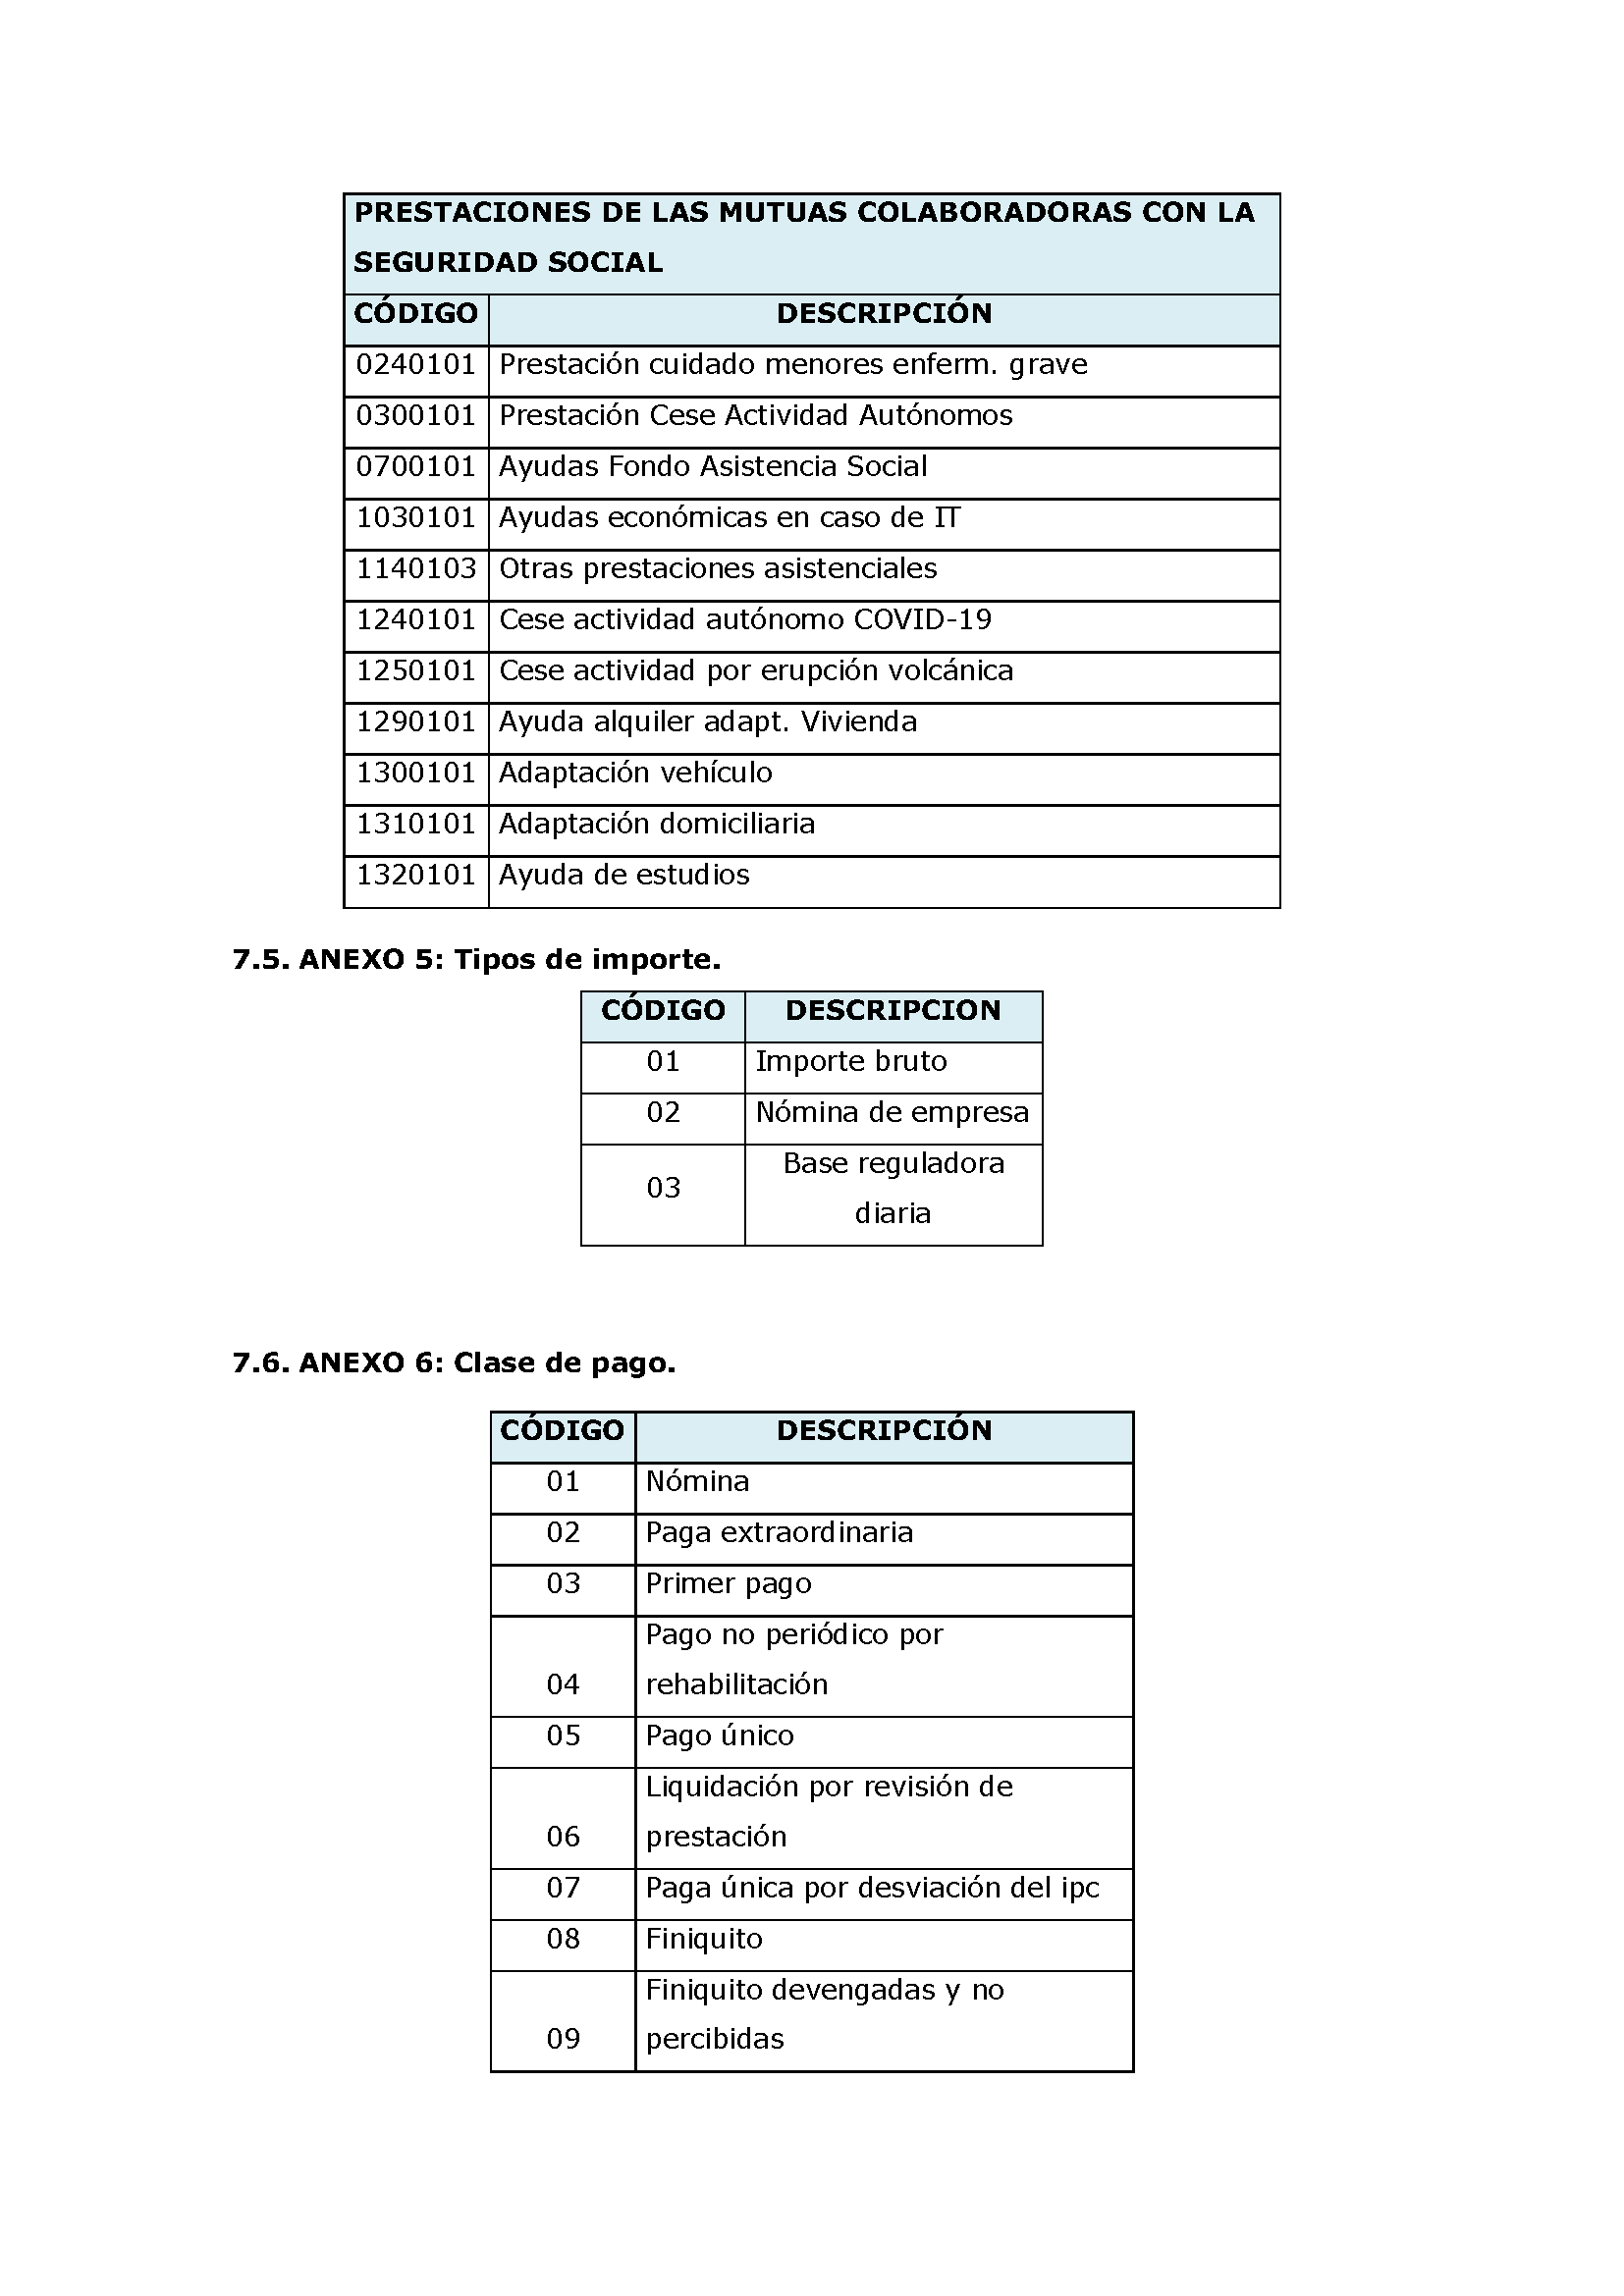 ANEXOS PROTOCOLO DE INTERCAMBIO DE FICHEROS PARA LA CARGA DE DATOS EN TARJETA SOCIAL DIGITAL Pag 89